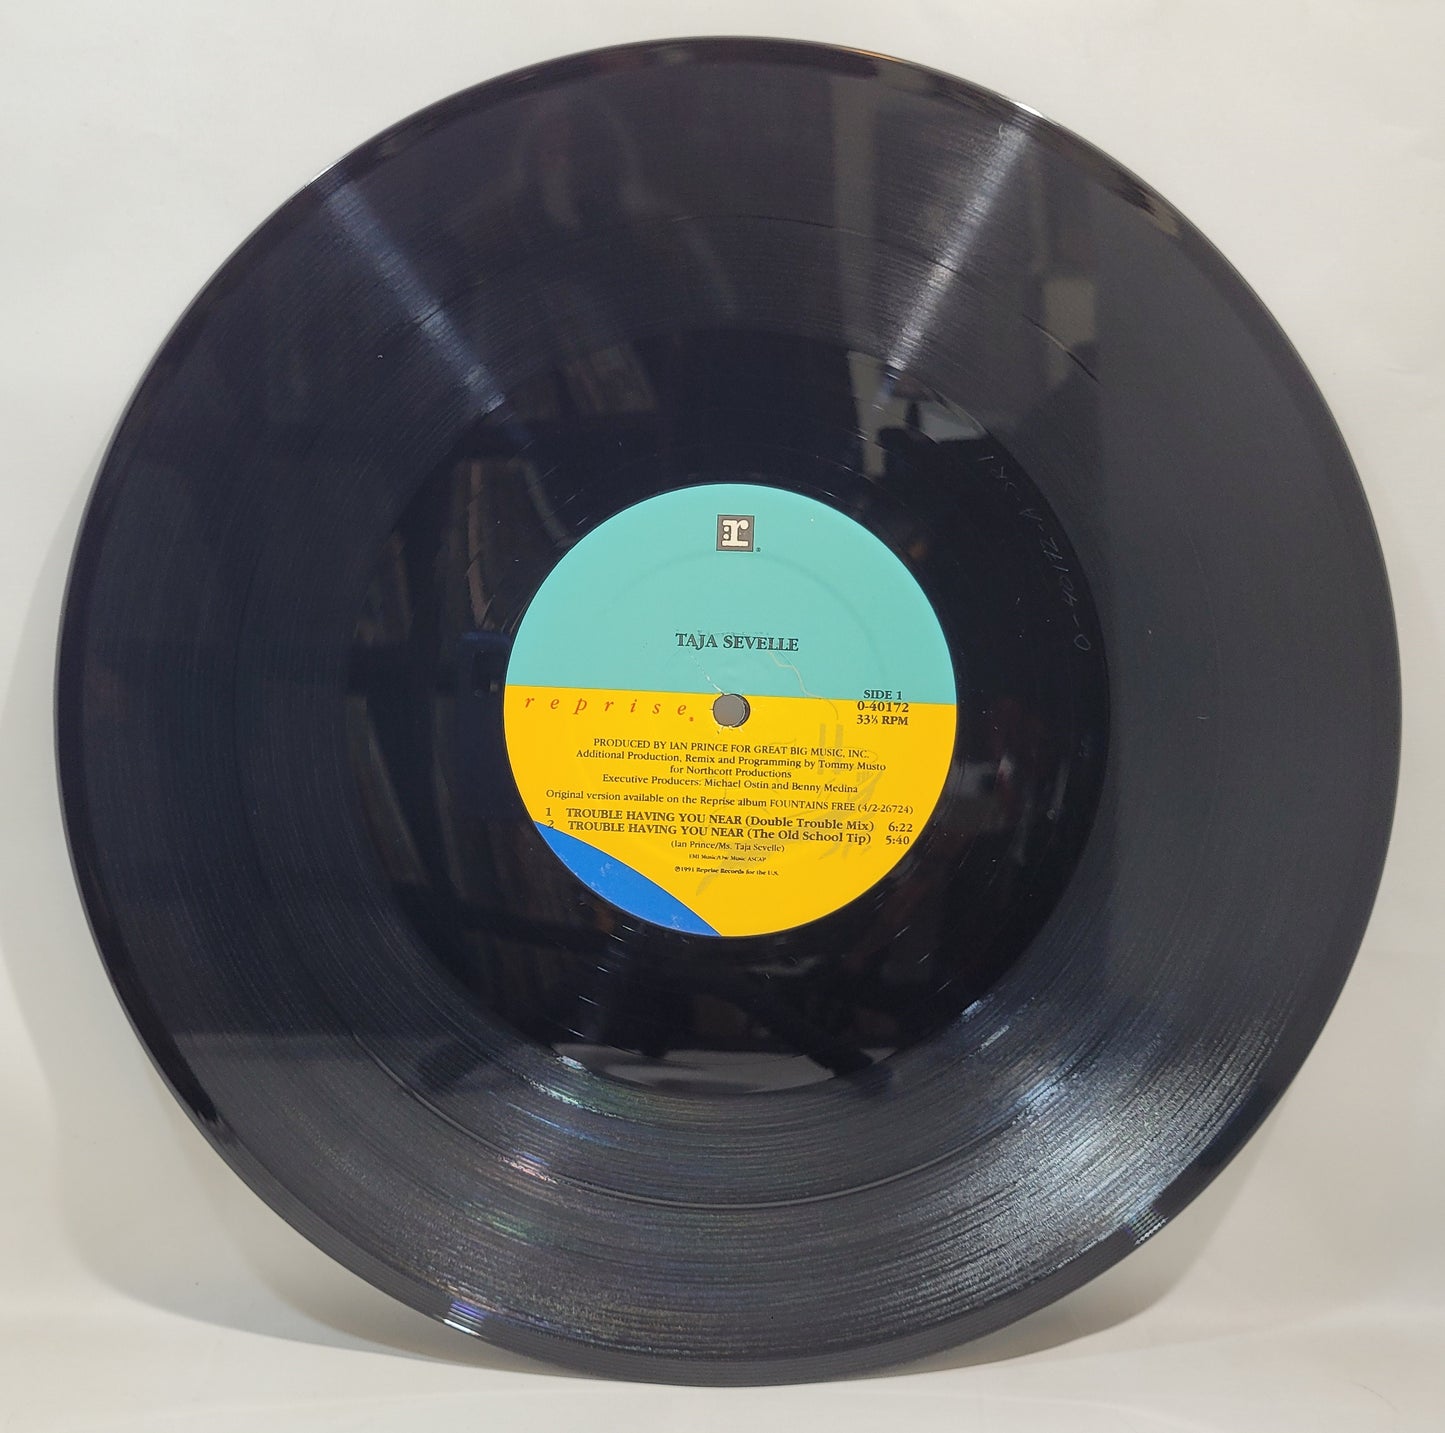 Taja Sevelle - Trouble Having You Near [Vinyl Record 12" Single]